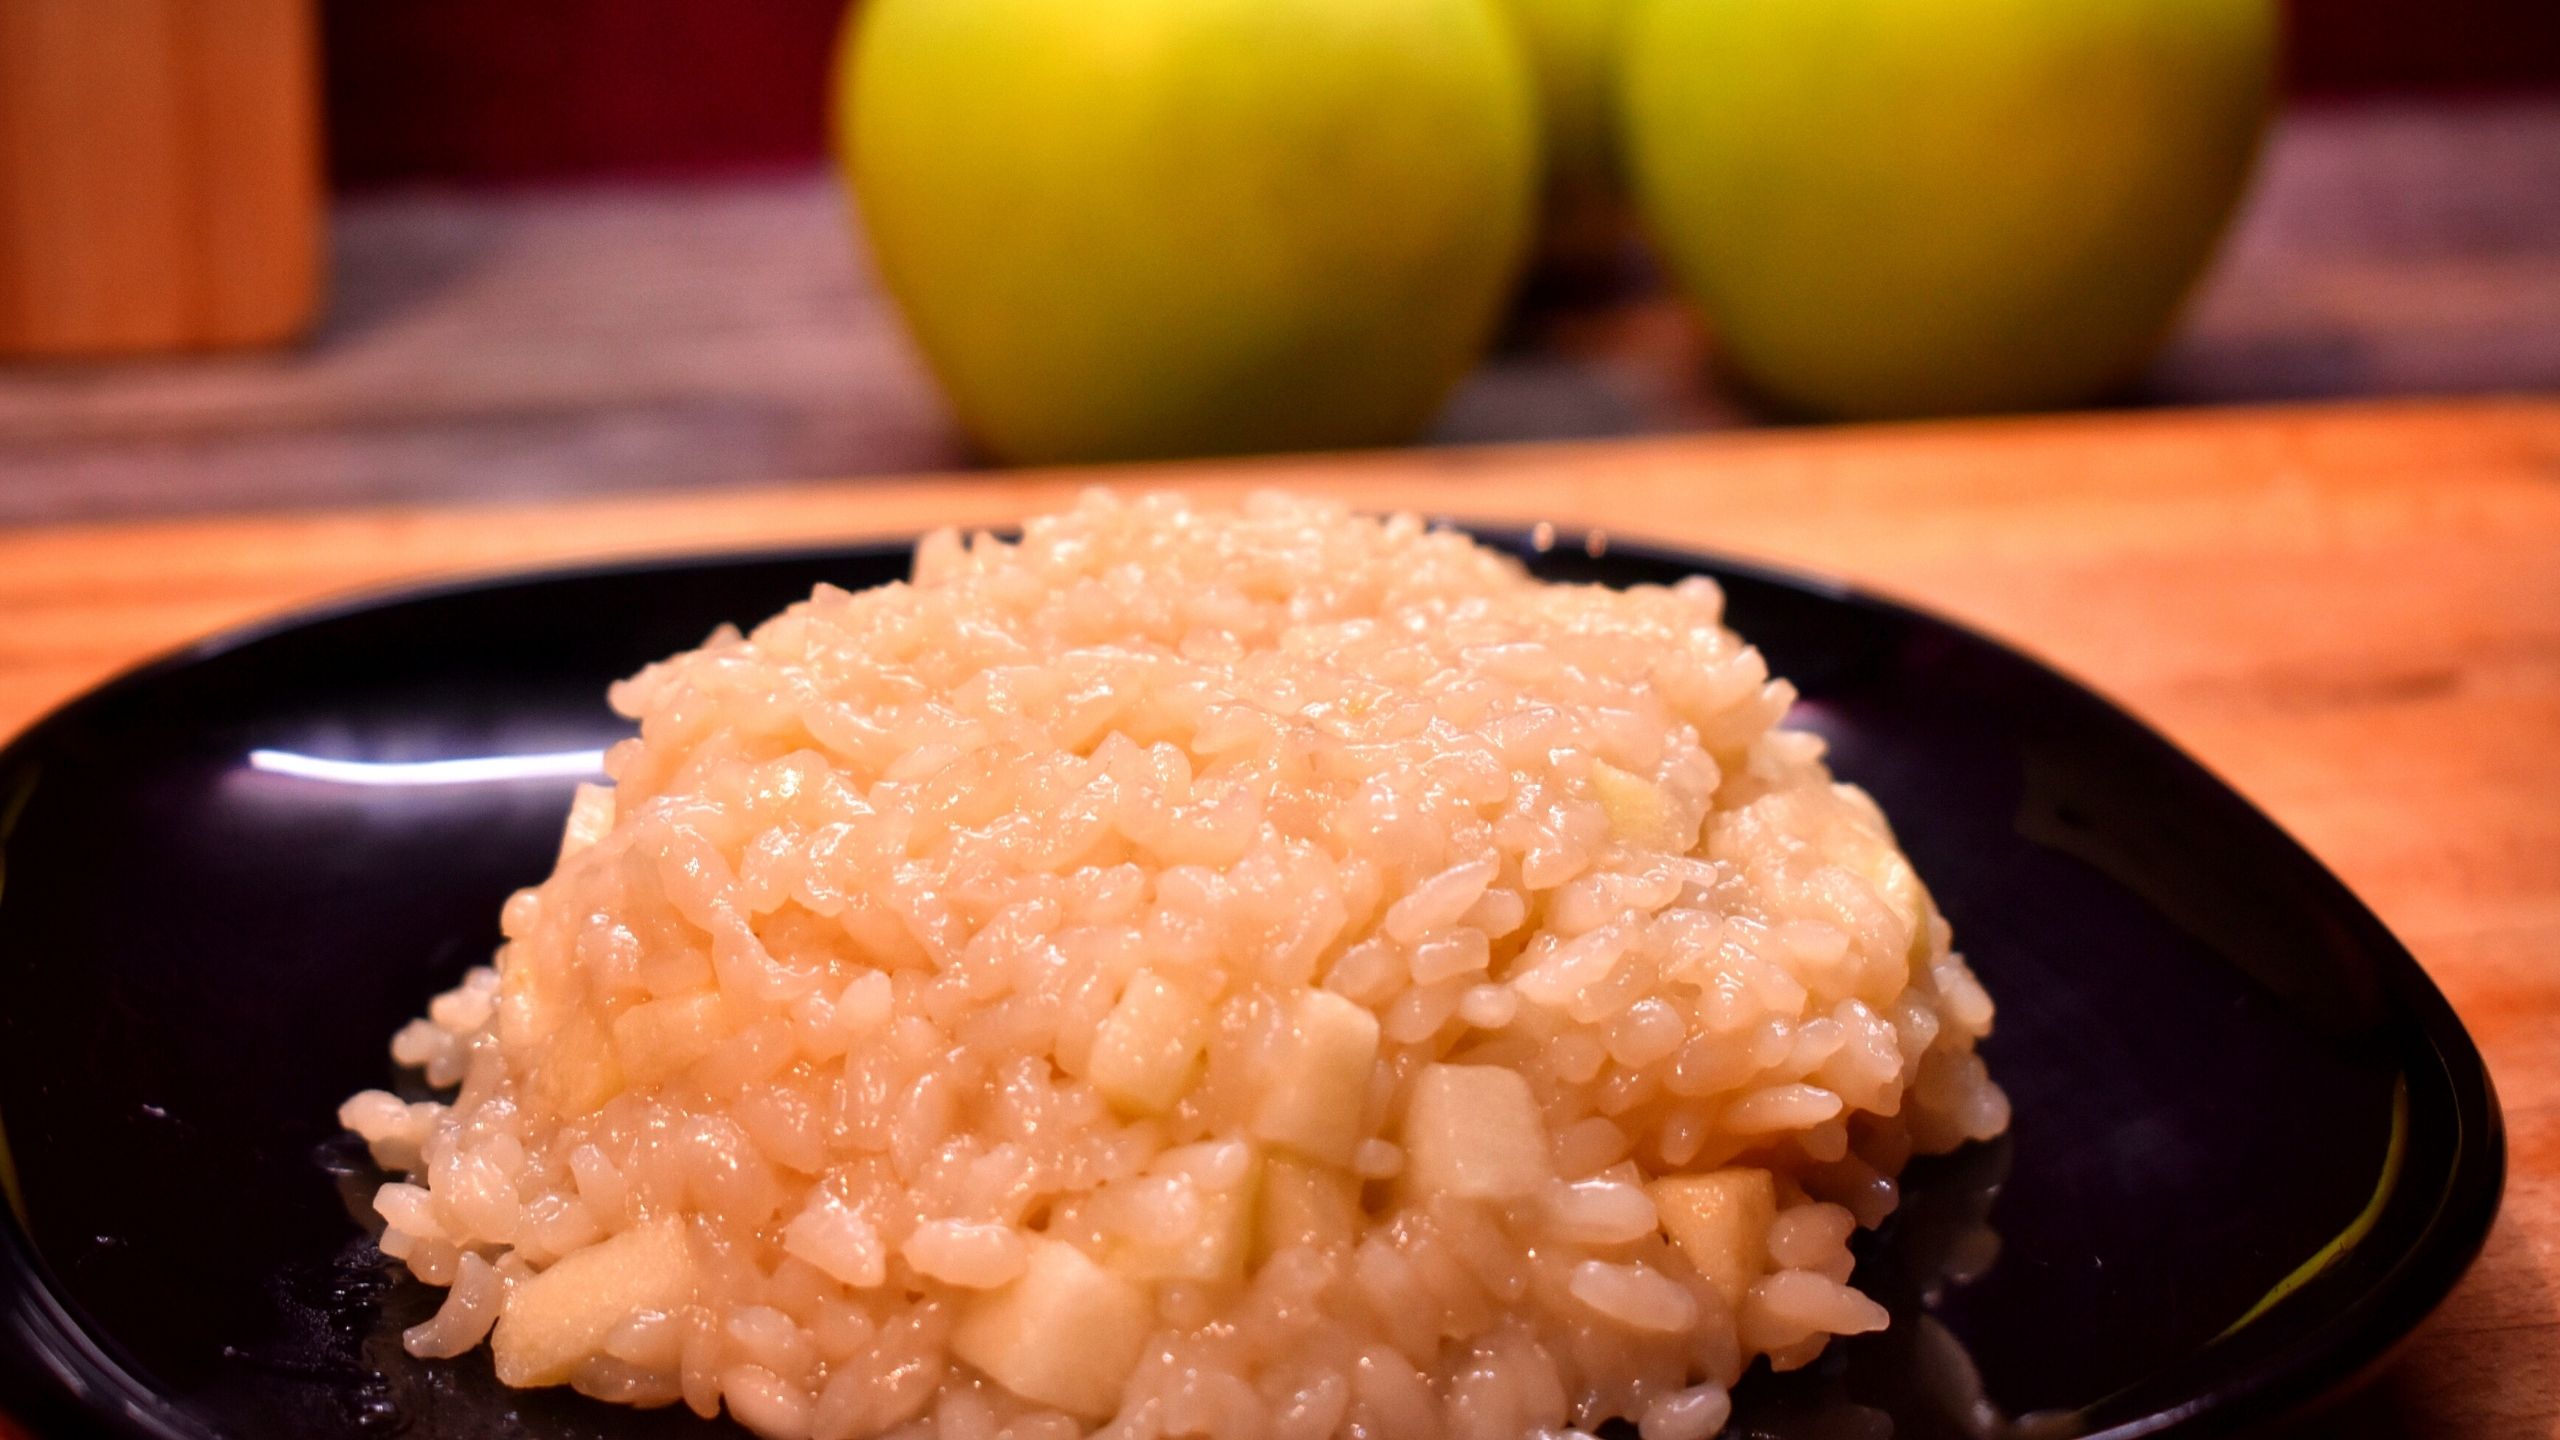 Рис с яблоками рецепт. Яблочное ризотто. Яблоки с рисом. Как готовить рис с яблоками. Самый вкусный плов в мире.